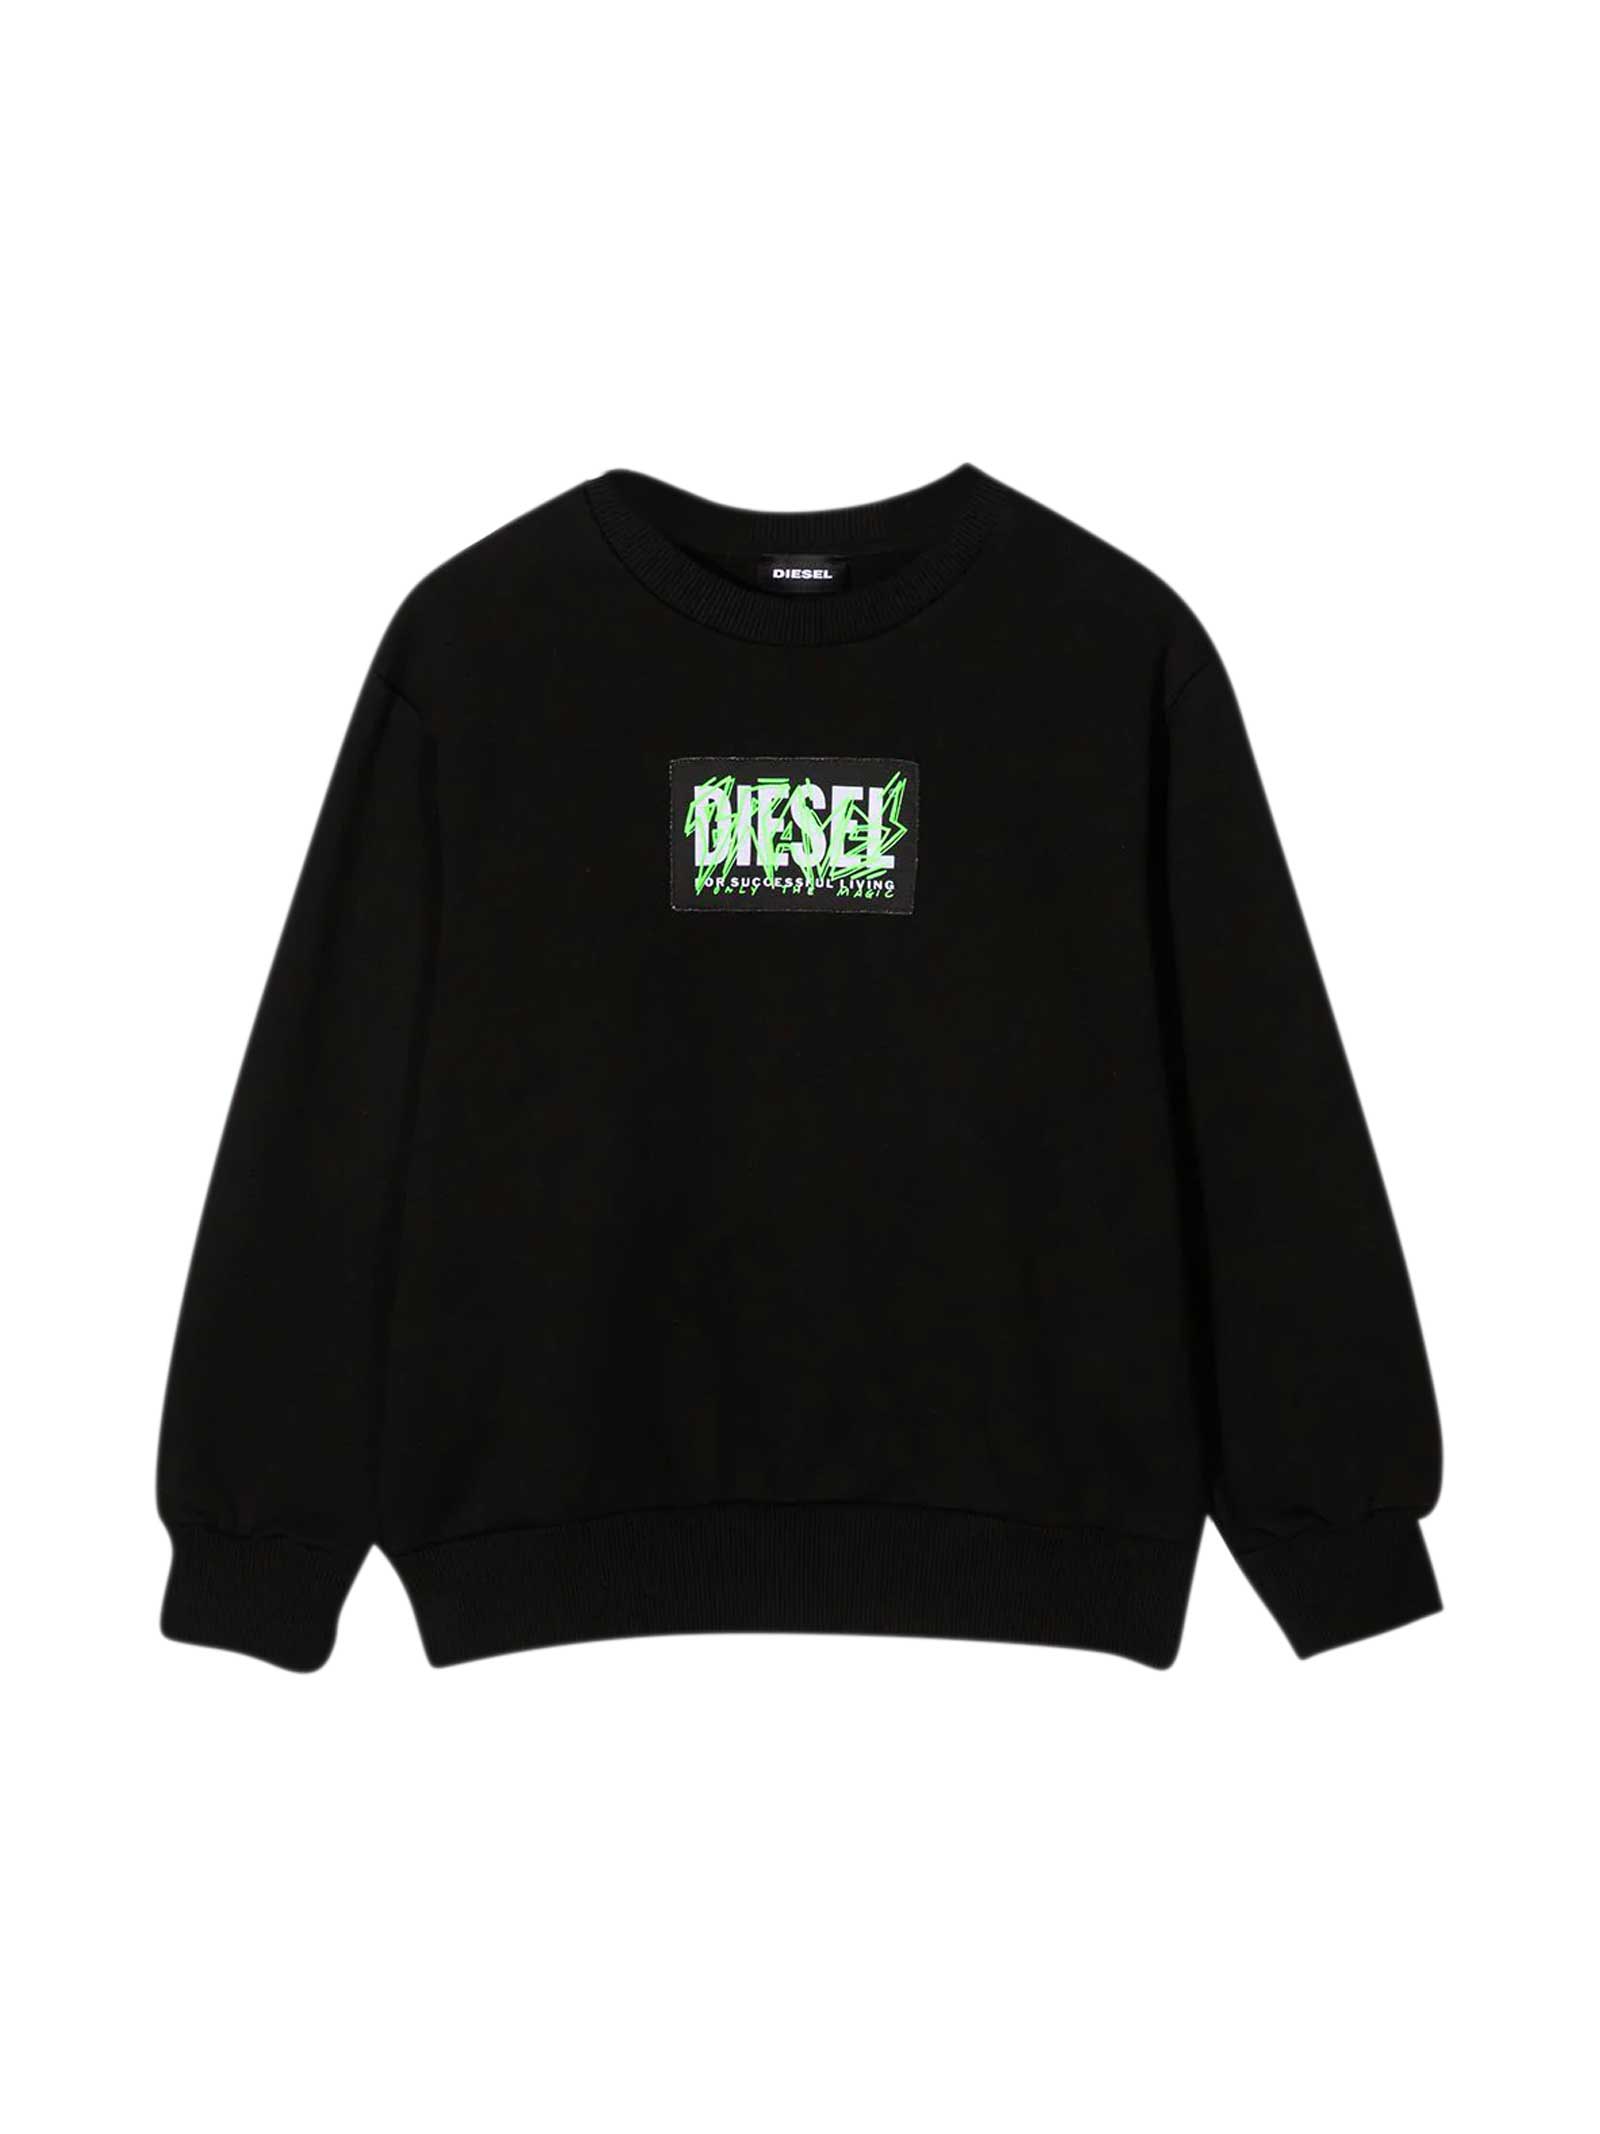 Diesel Black Sweatshirt